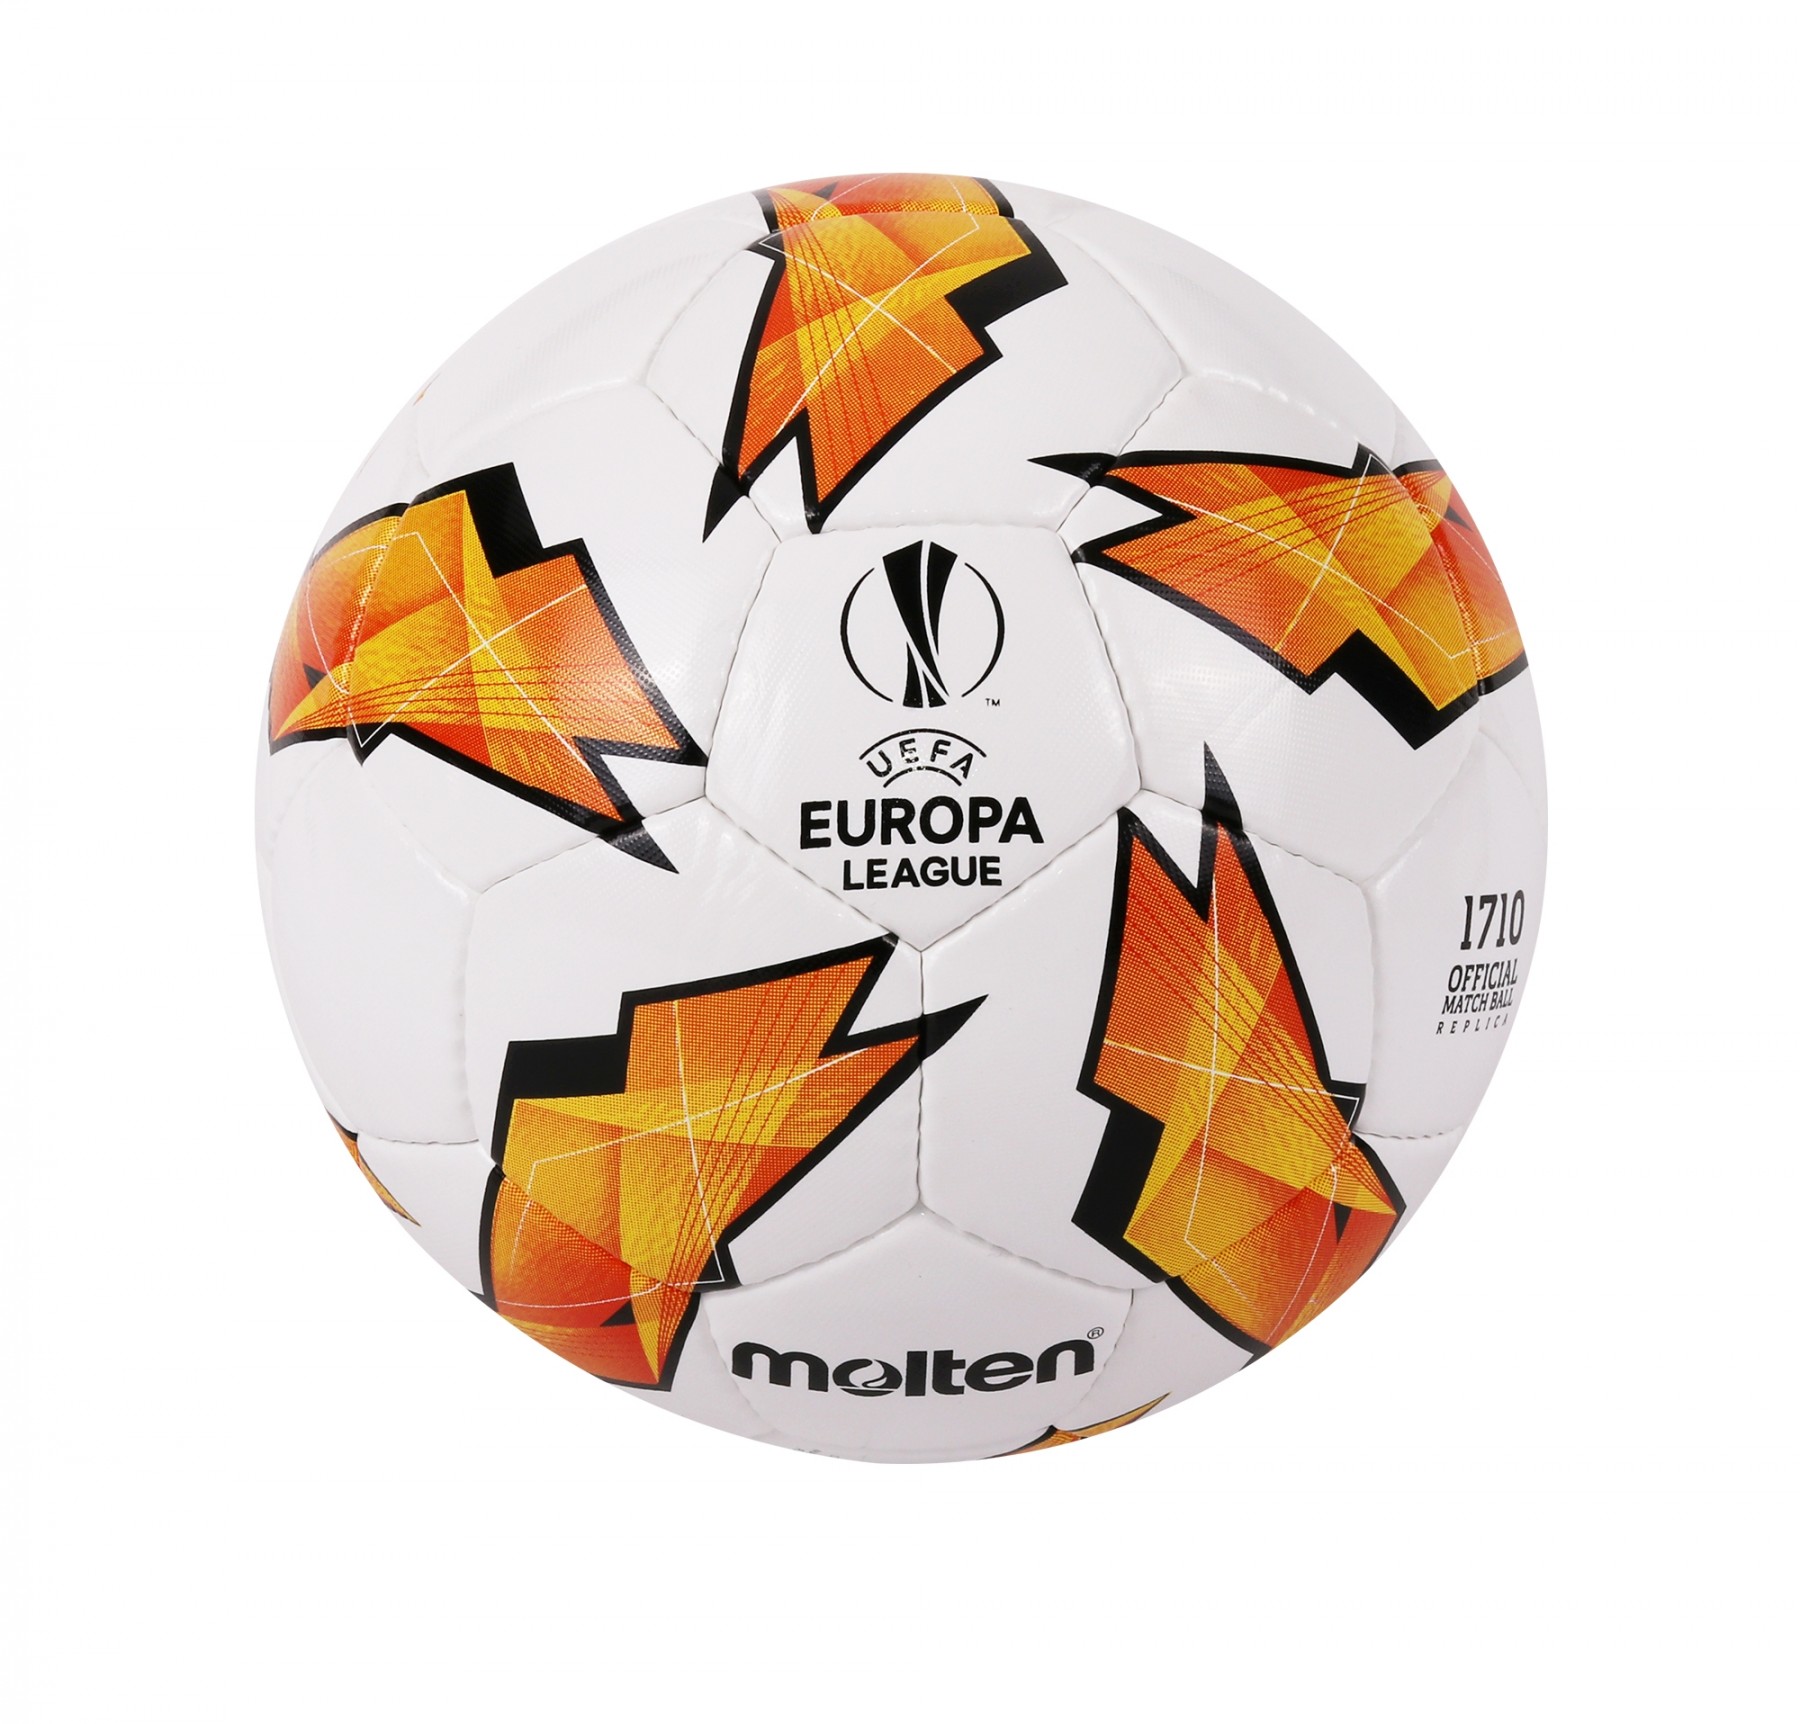 Official Europa League Match Day Ball!